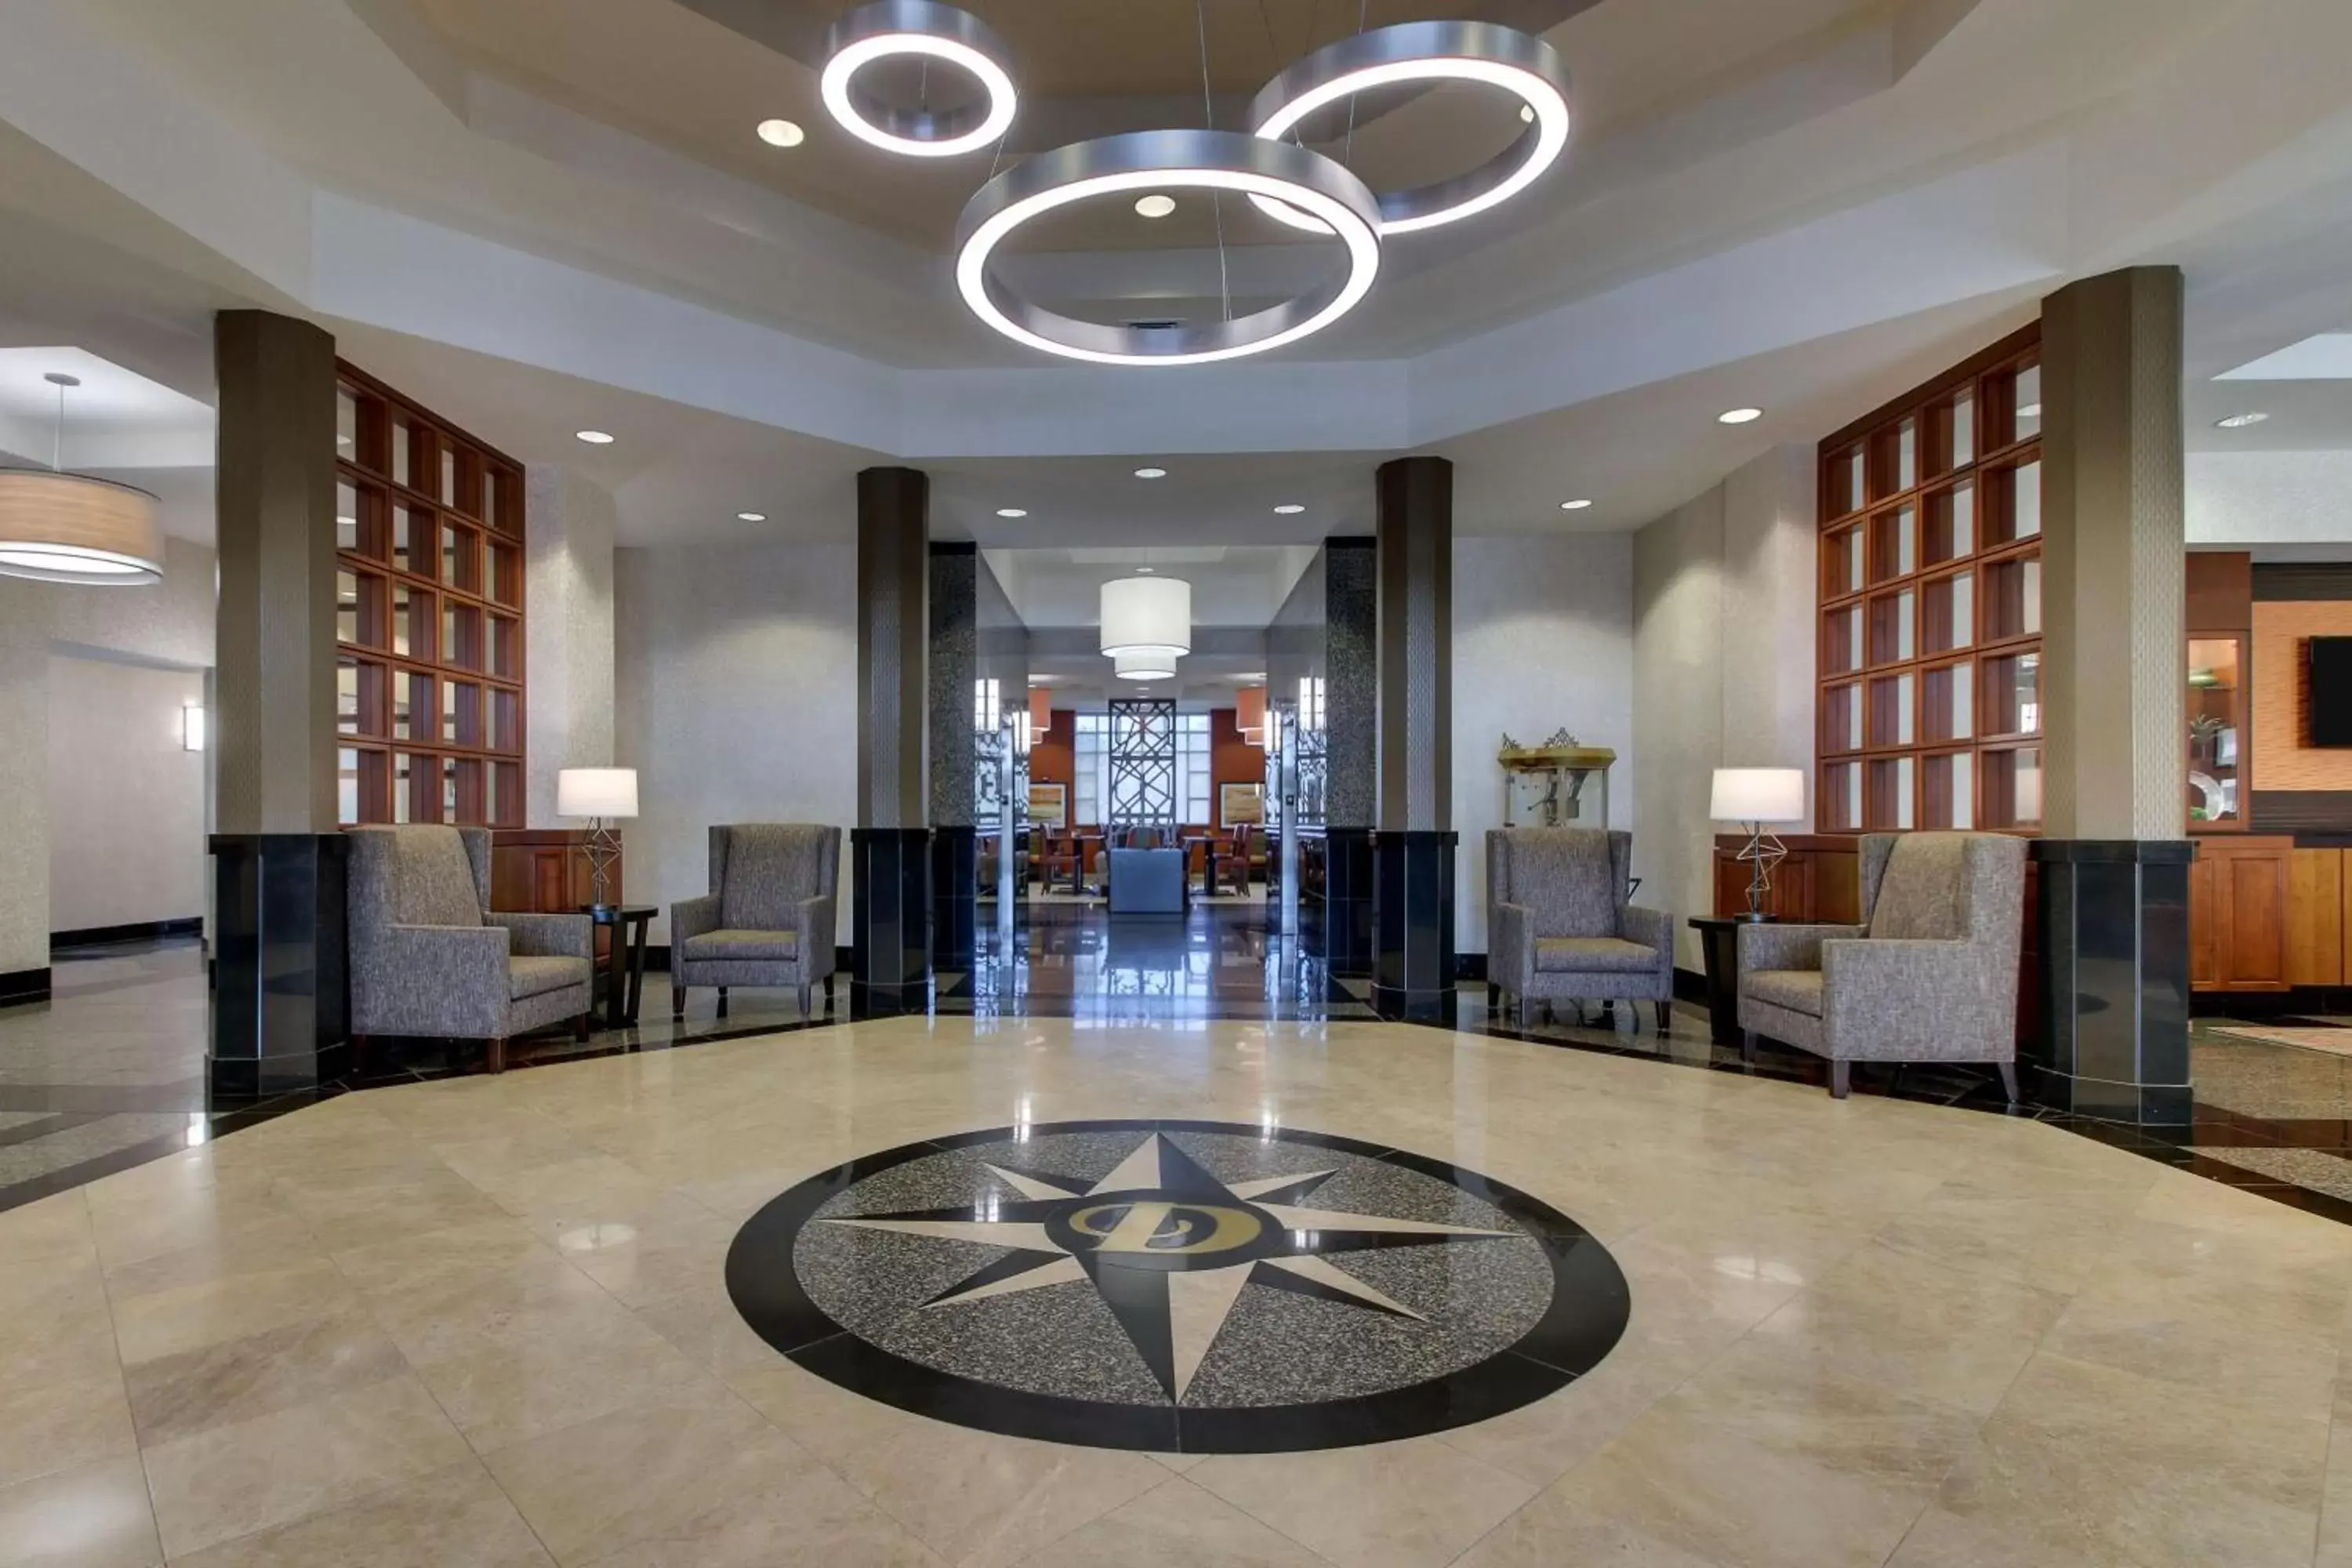 Lobby or reception in Drury Inn & Suites Meridian